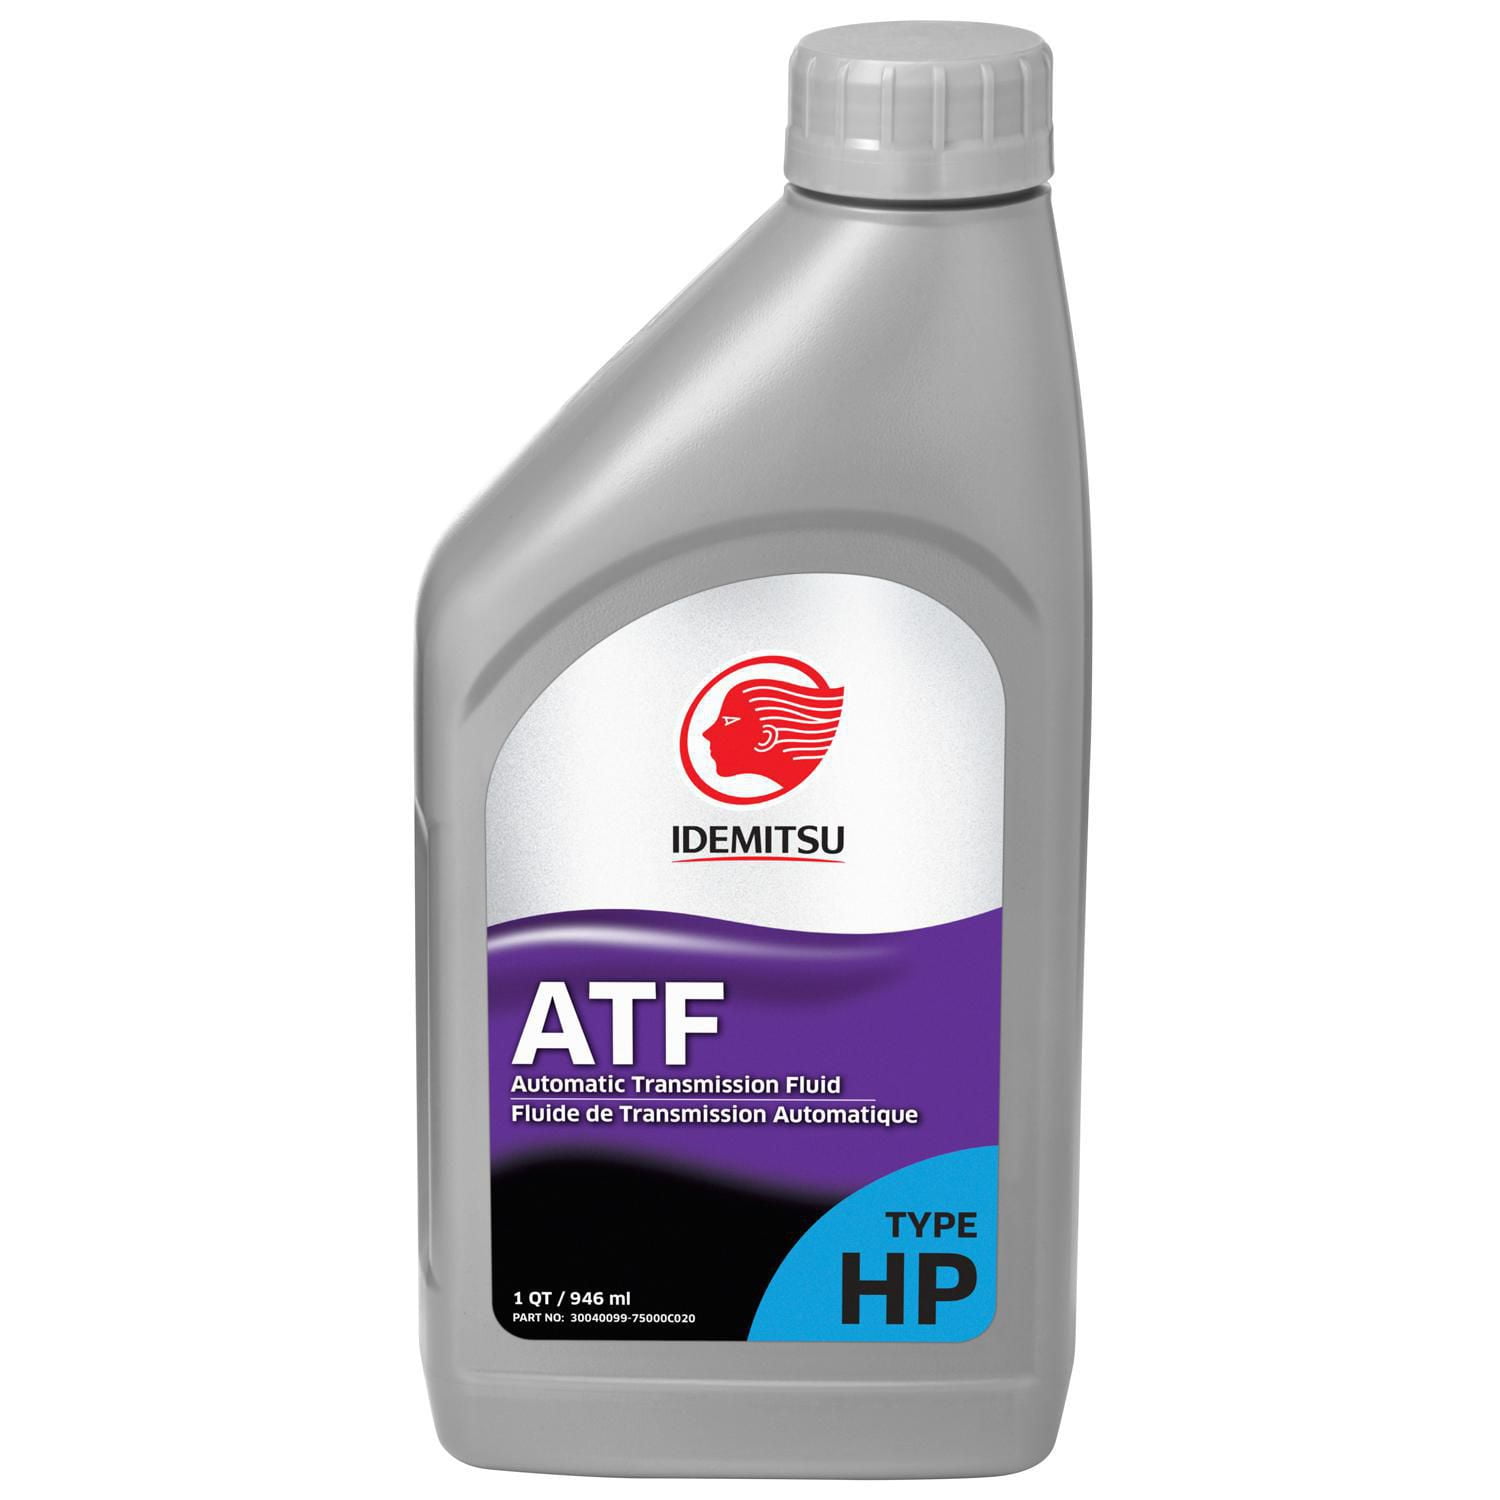 Idemitsu ATF TYPE HP Automatic Transmission Fluid, 1 quart bottle